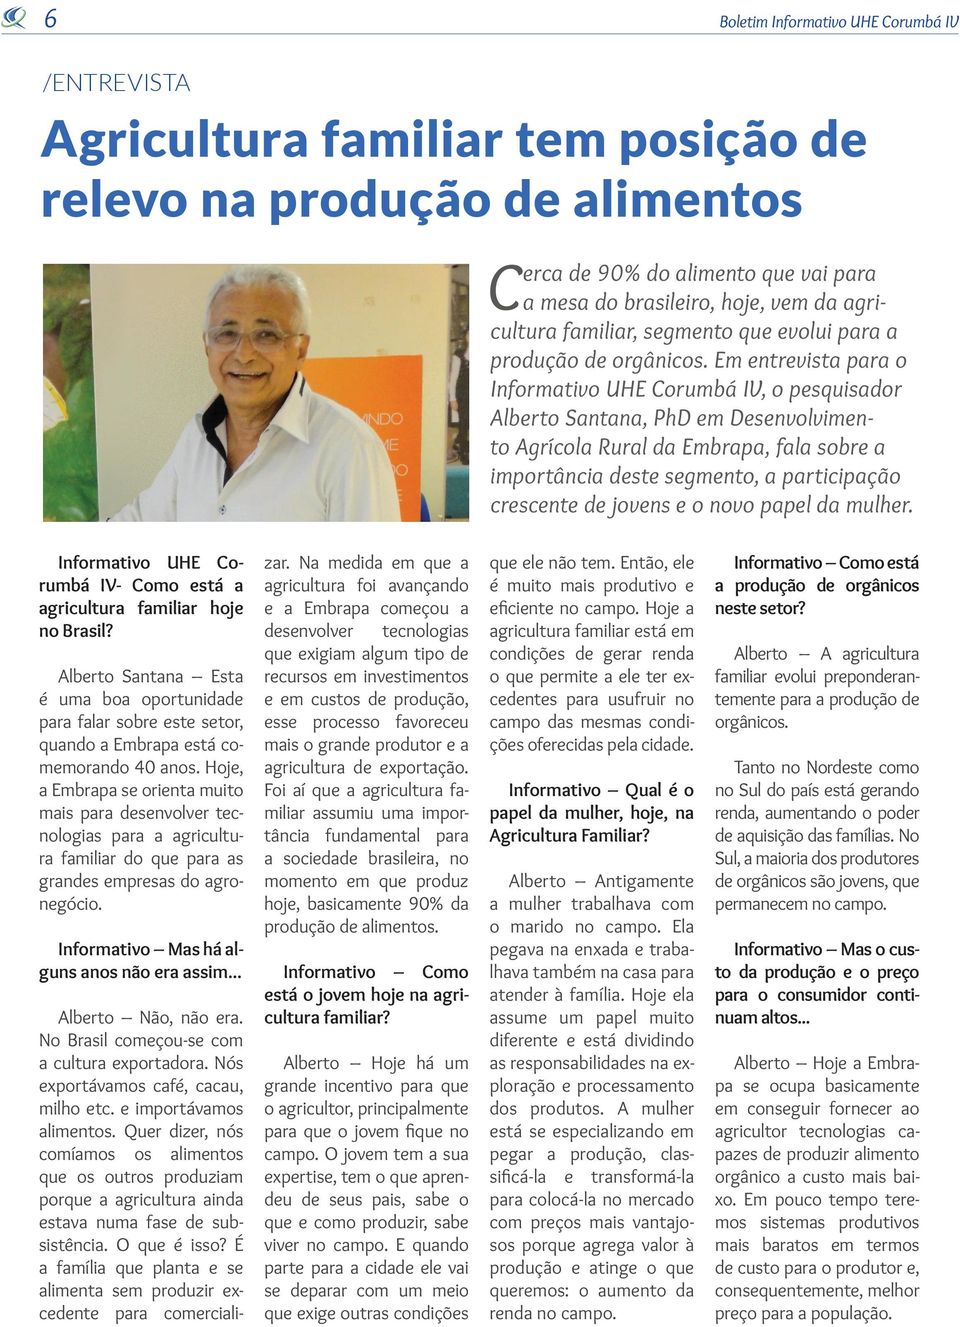 Em entrevista para o Informativo UHE Corumbá IV, o pesquisador Alberto Santana, PhD em Desenvolvimento Agrícola Rural da Embrapa, fala sobre a importância deste segmento, a participação crescente de